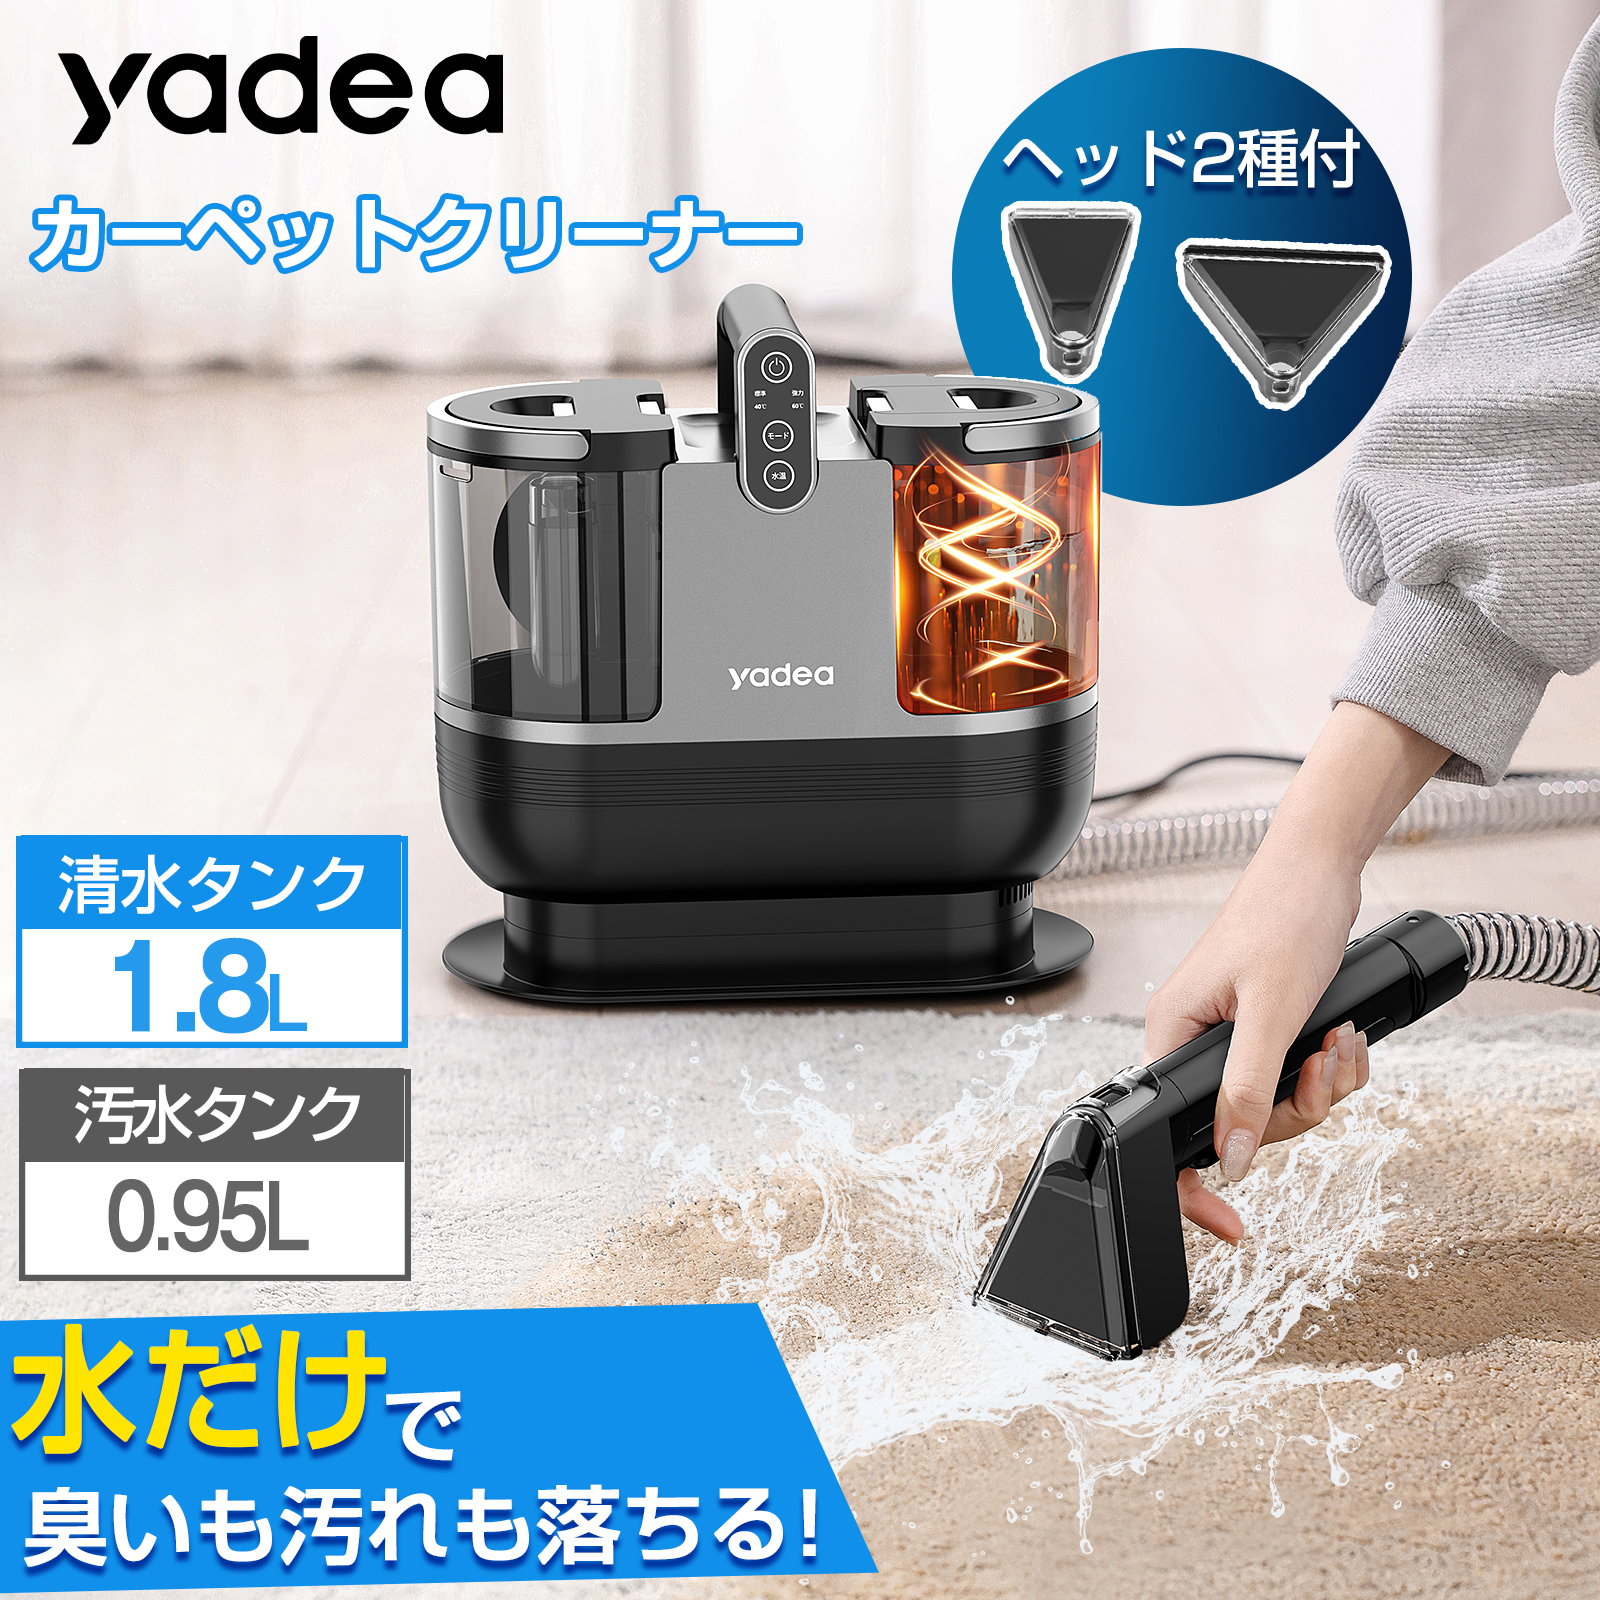 【楽天市場】カーペットクリーナー yadea 加熱式 クリーナー 掃除機 